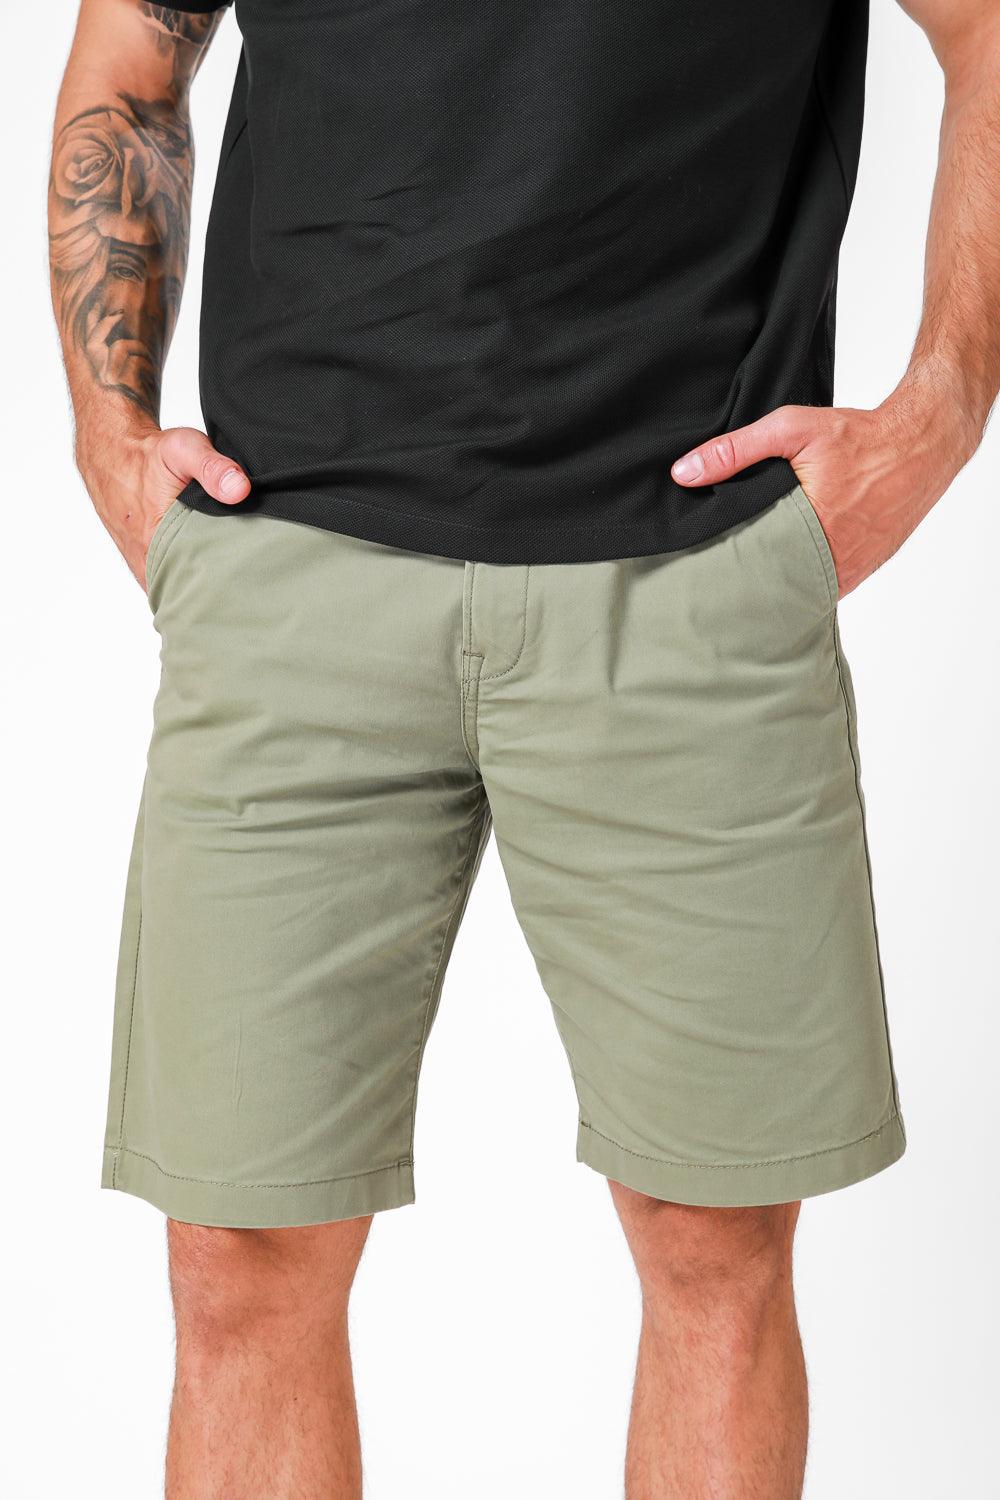 LEE - מכנסי ברמודה בצבע ירוק זית - MASHBIR//365